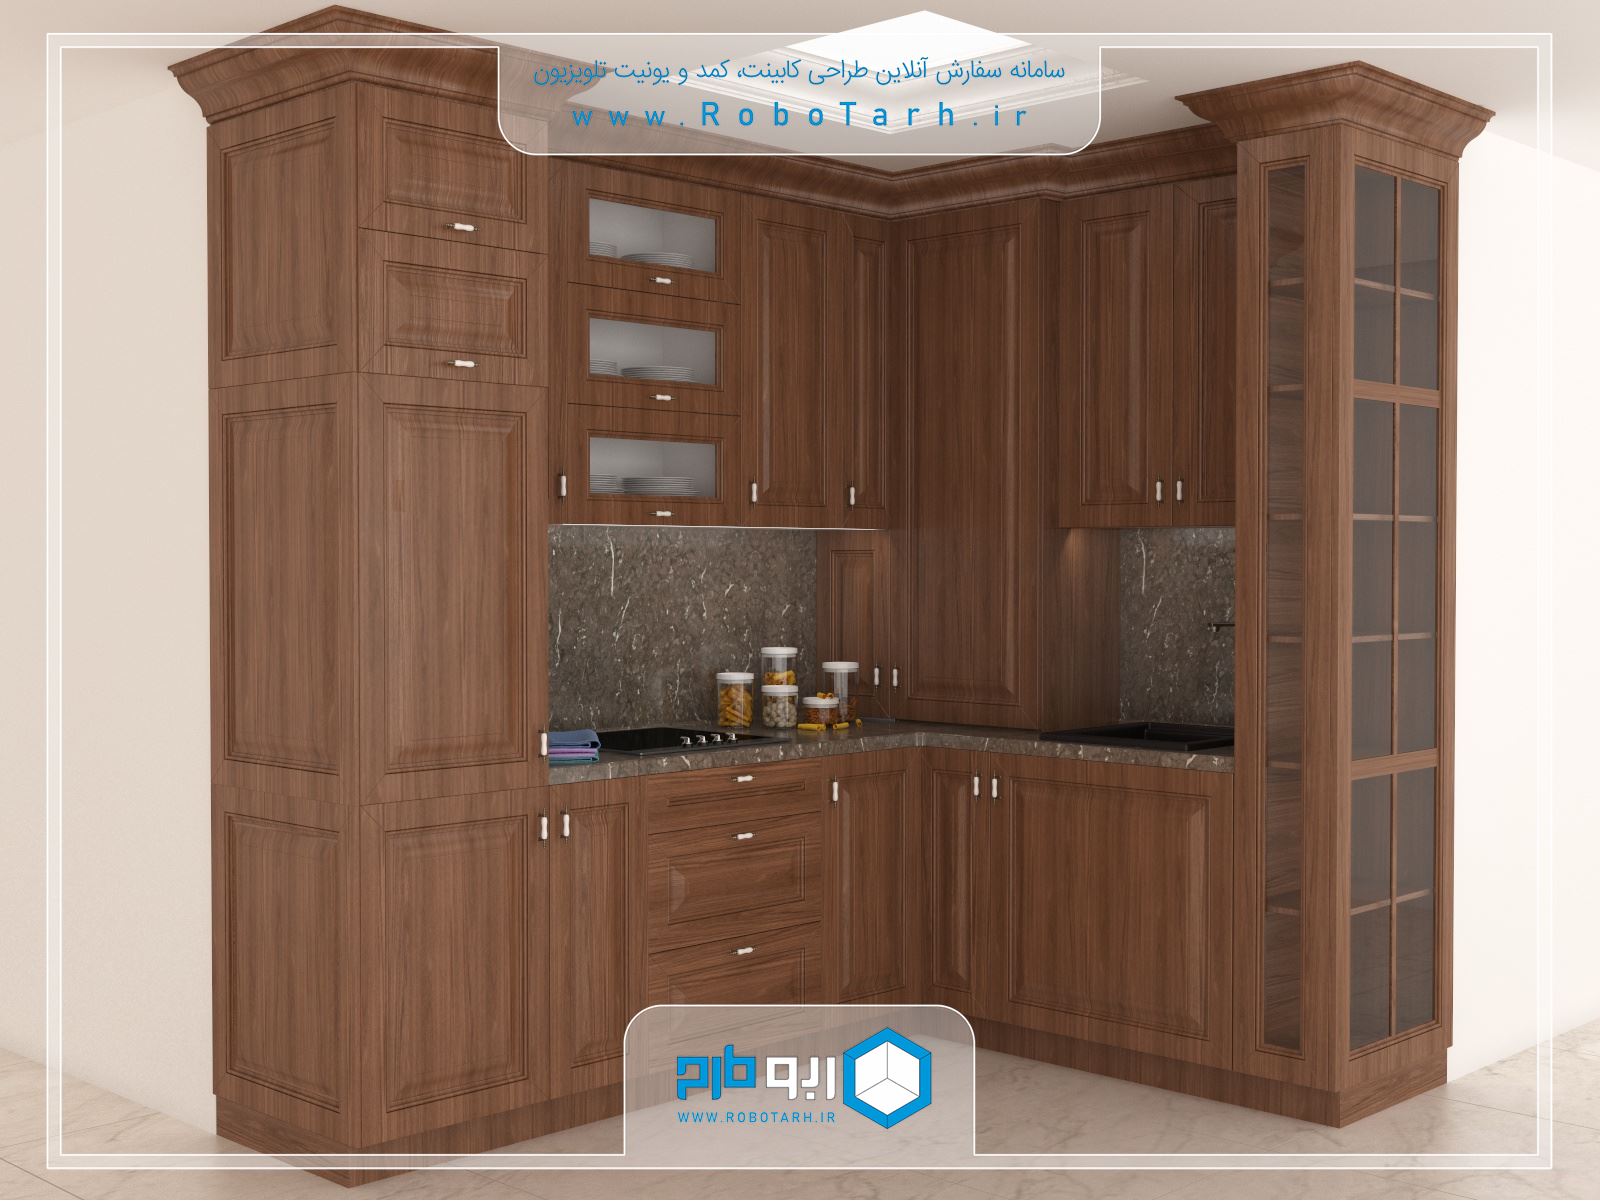 طراحی کابینت آشپزخانه کلاسیک کوچک قهوه ای رنگ با چیدمان ال شکل - ربوطرح